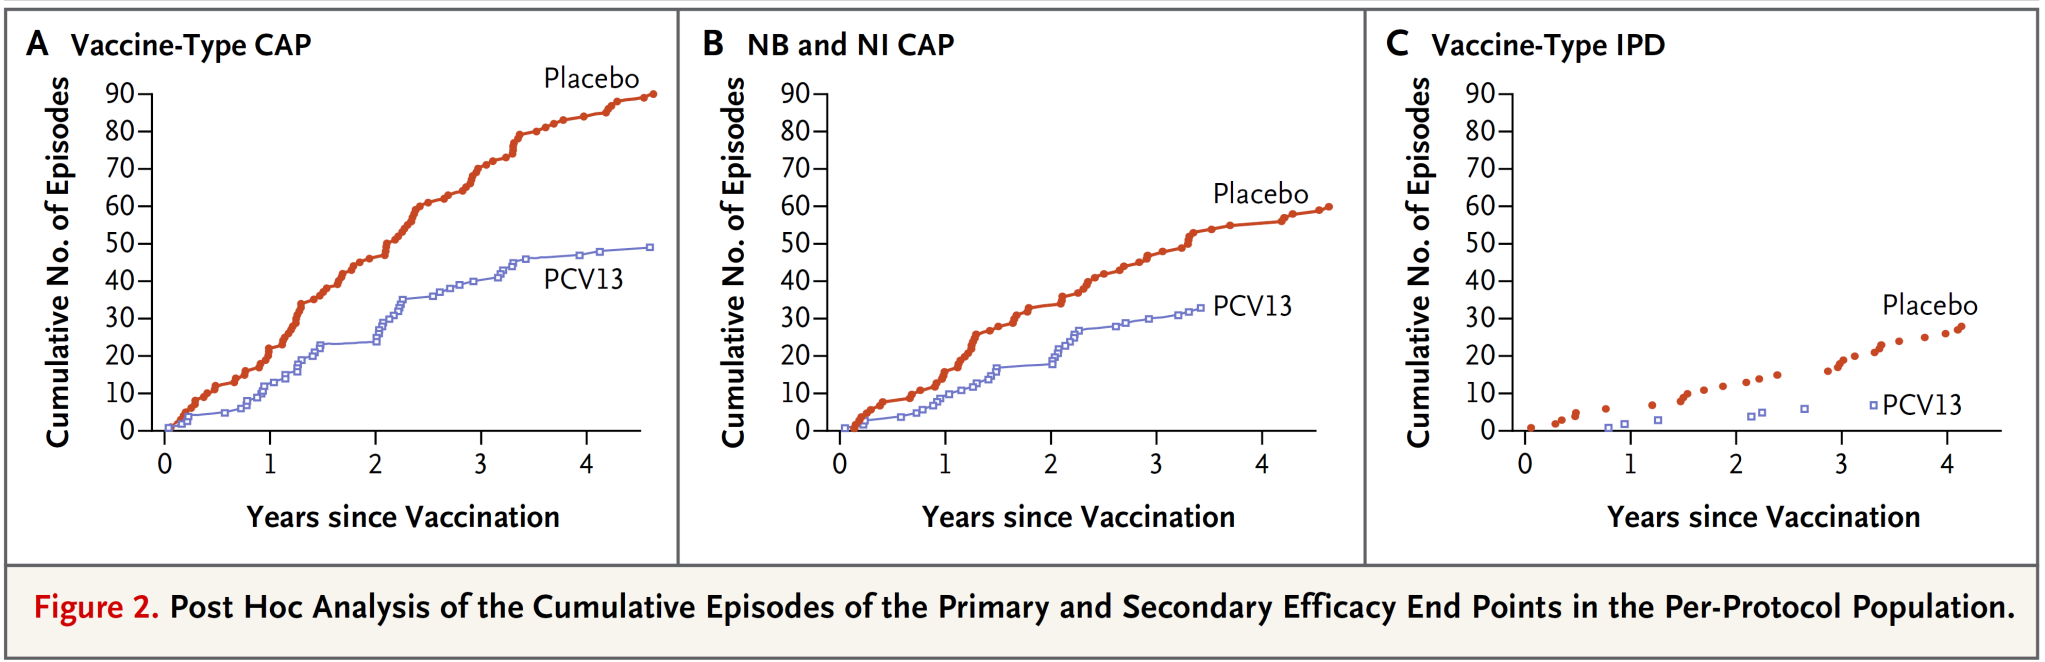 La prevención comenzó pronto tras la vacunación y persistió durante todo el estudio (3,97 años) 1 er episodio NAC STV 1 er episodio NAC NB/NI STV 1 er episodio ENI STV La base